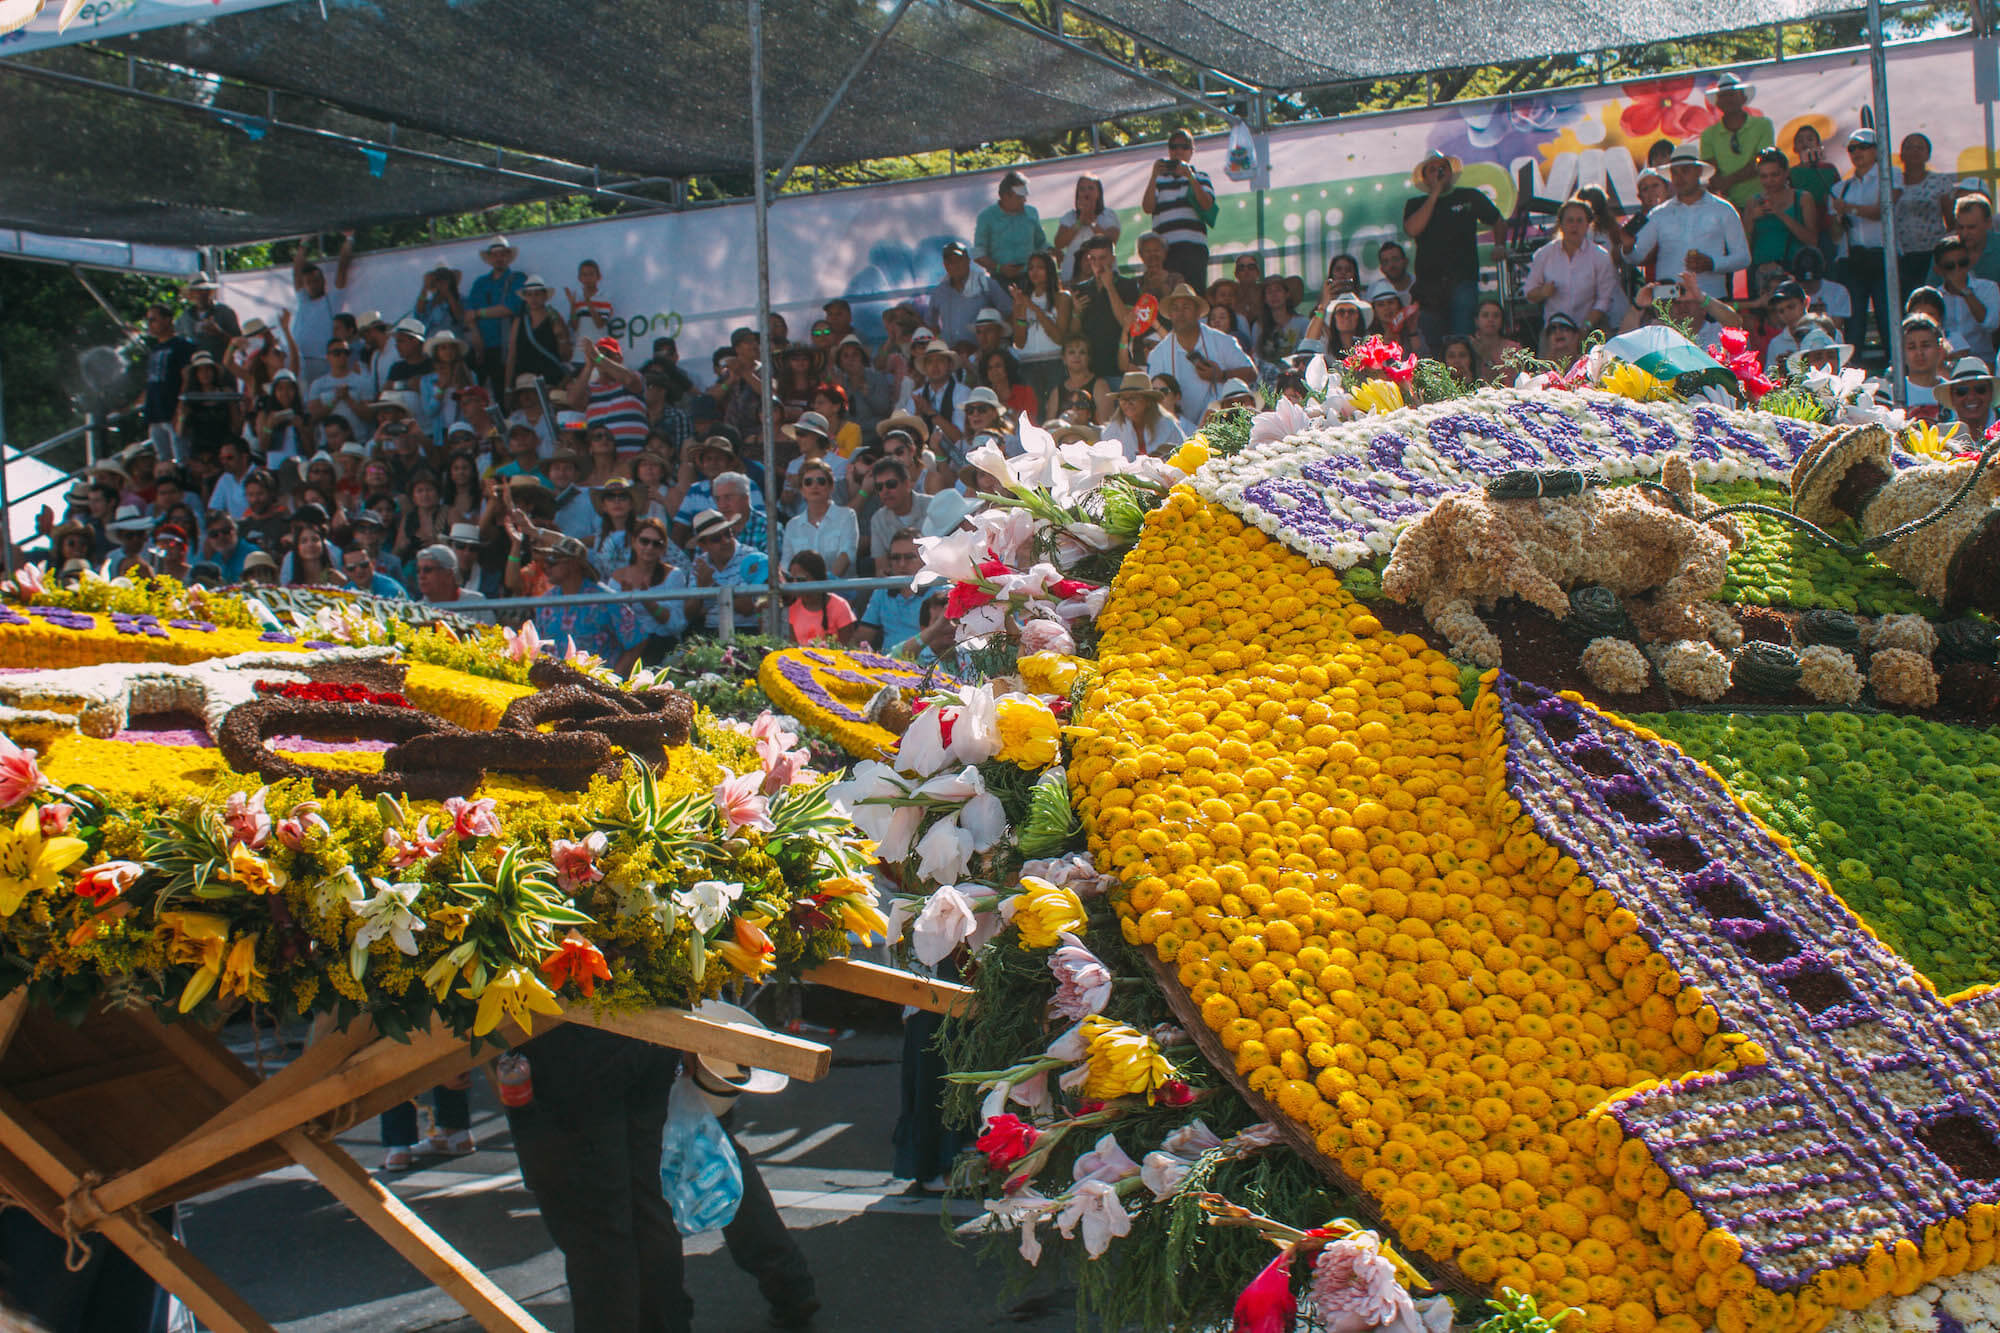 40 Inspiring Photos From Feria De Las Flores In Medellín Wanderluluu